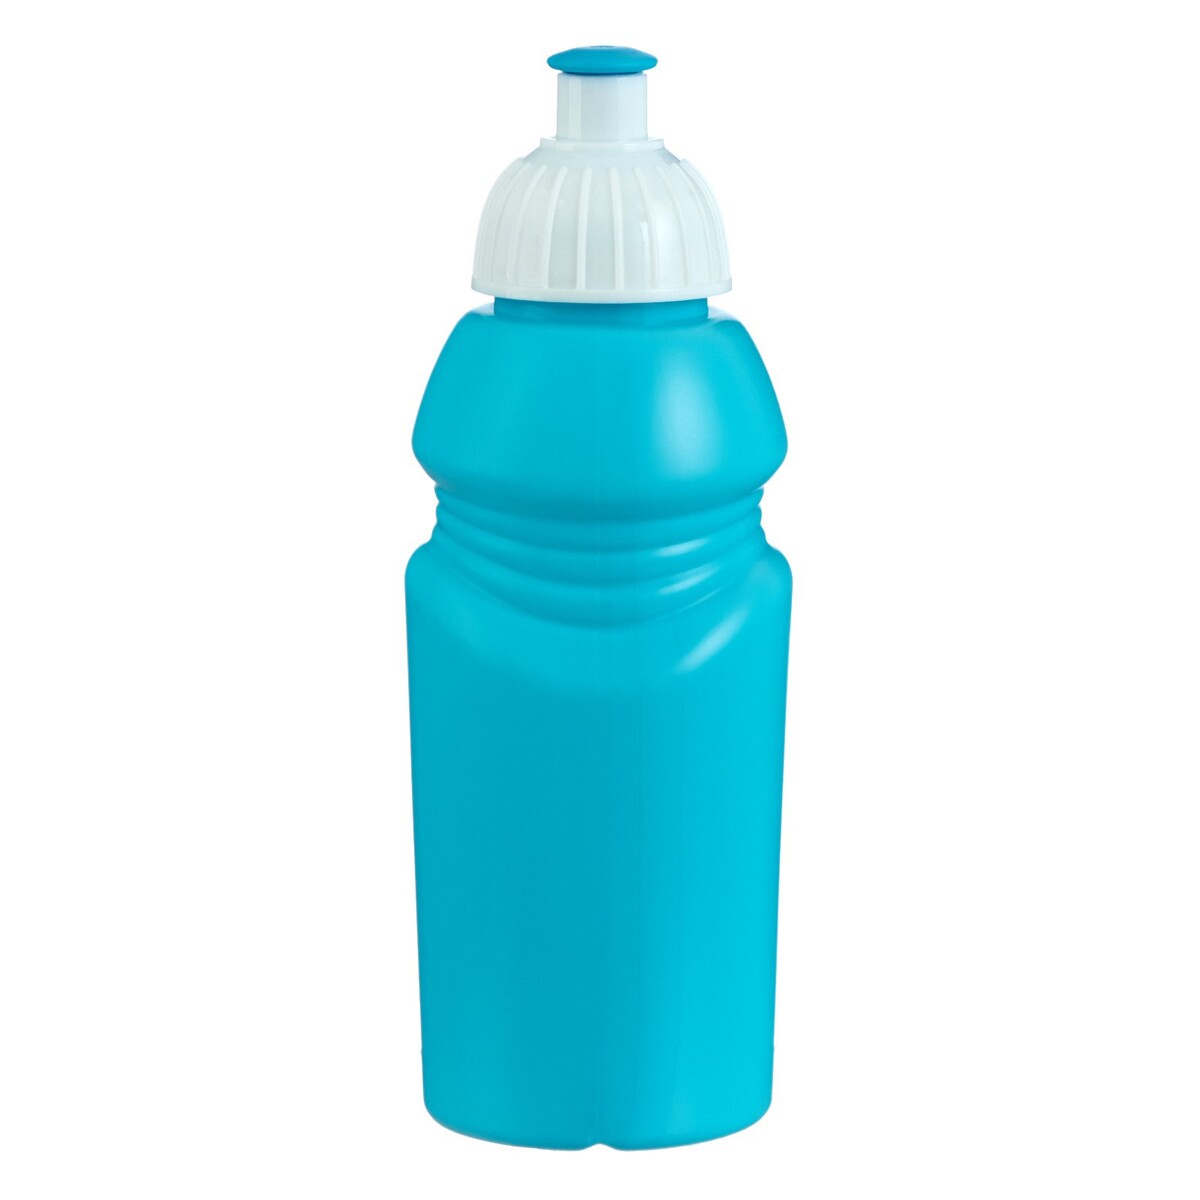 Бутылка для воды велосипедная, 400 мл, с поильником, 18 х 6.2 х 6.2 см, голубая